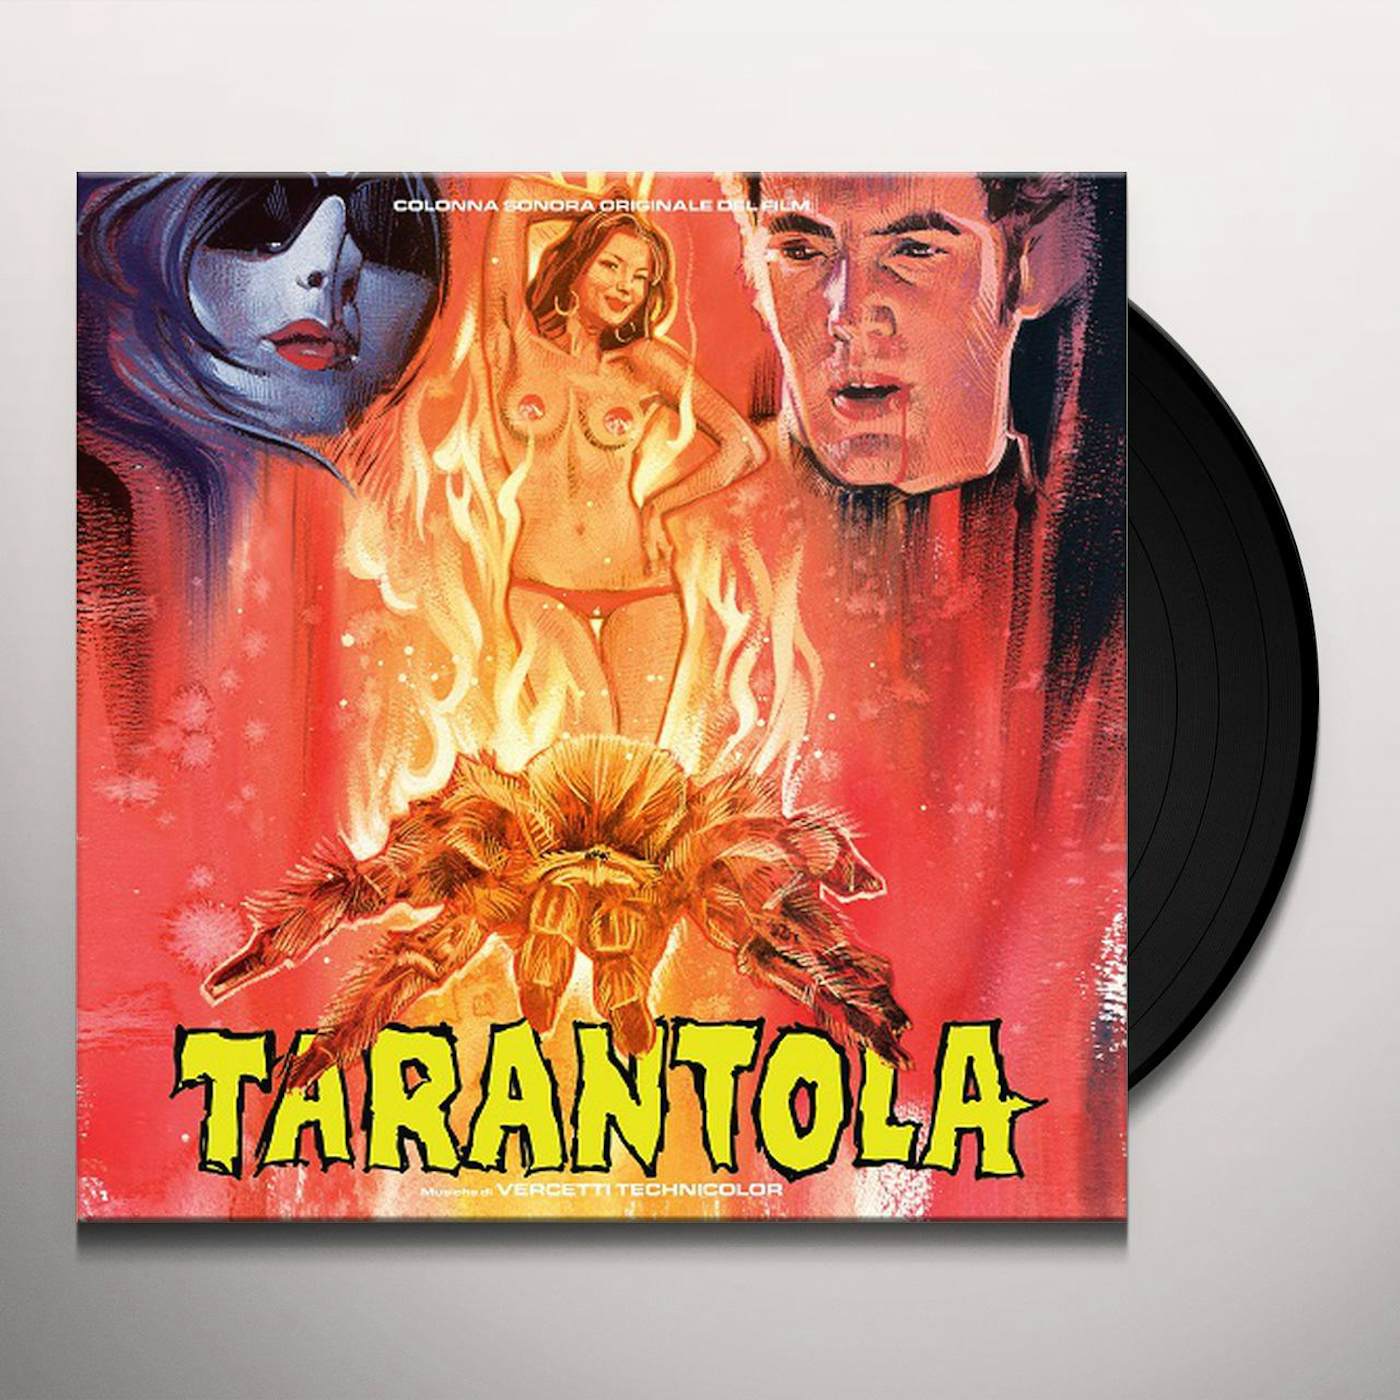 Vercetti Technicolor TARANTOLA / O.S.T. Vinyl Record